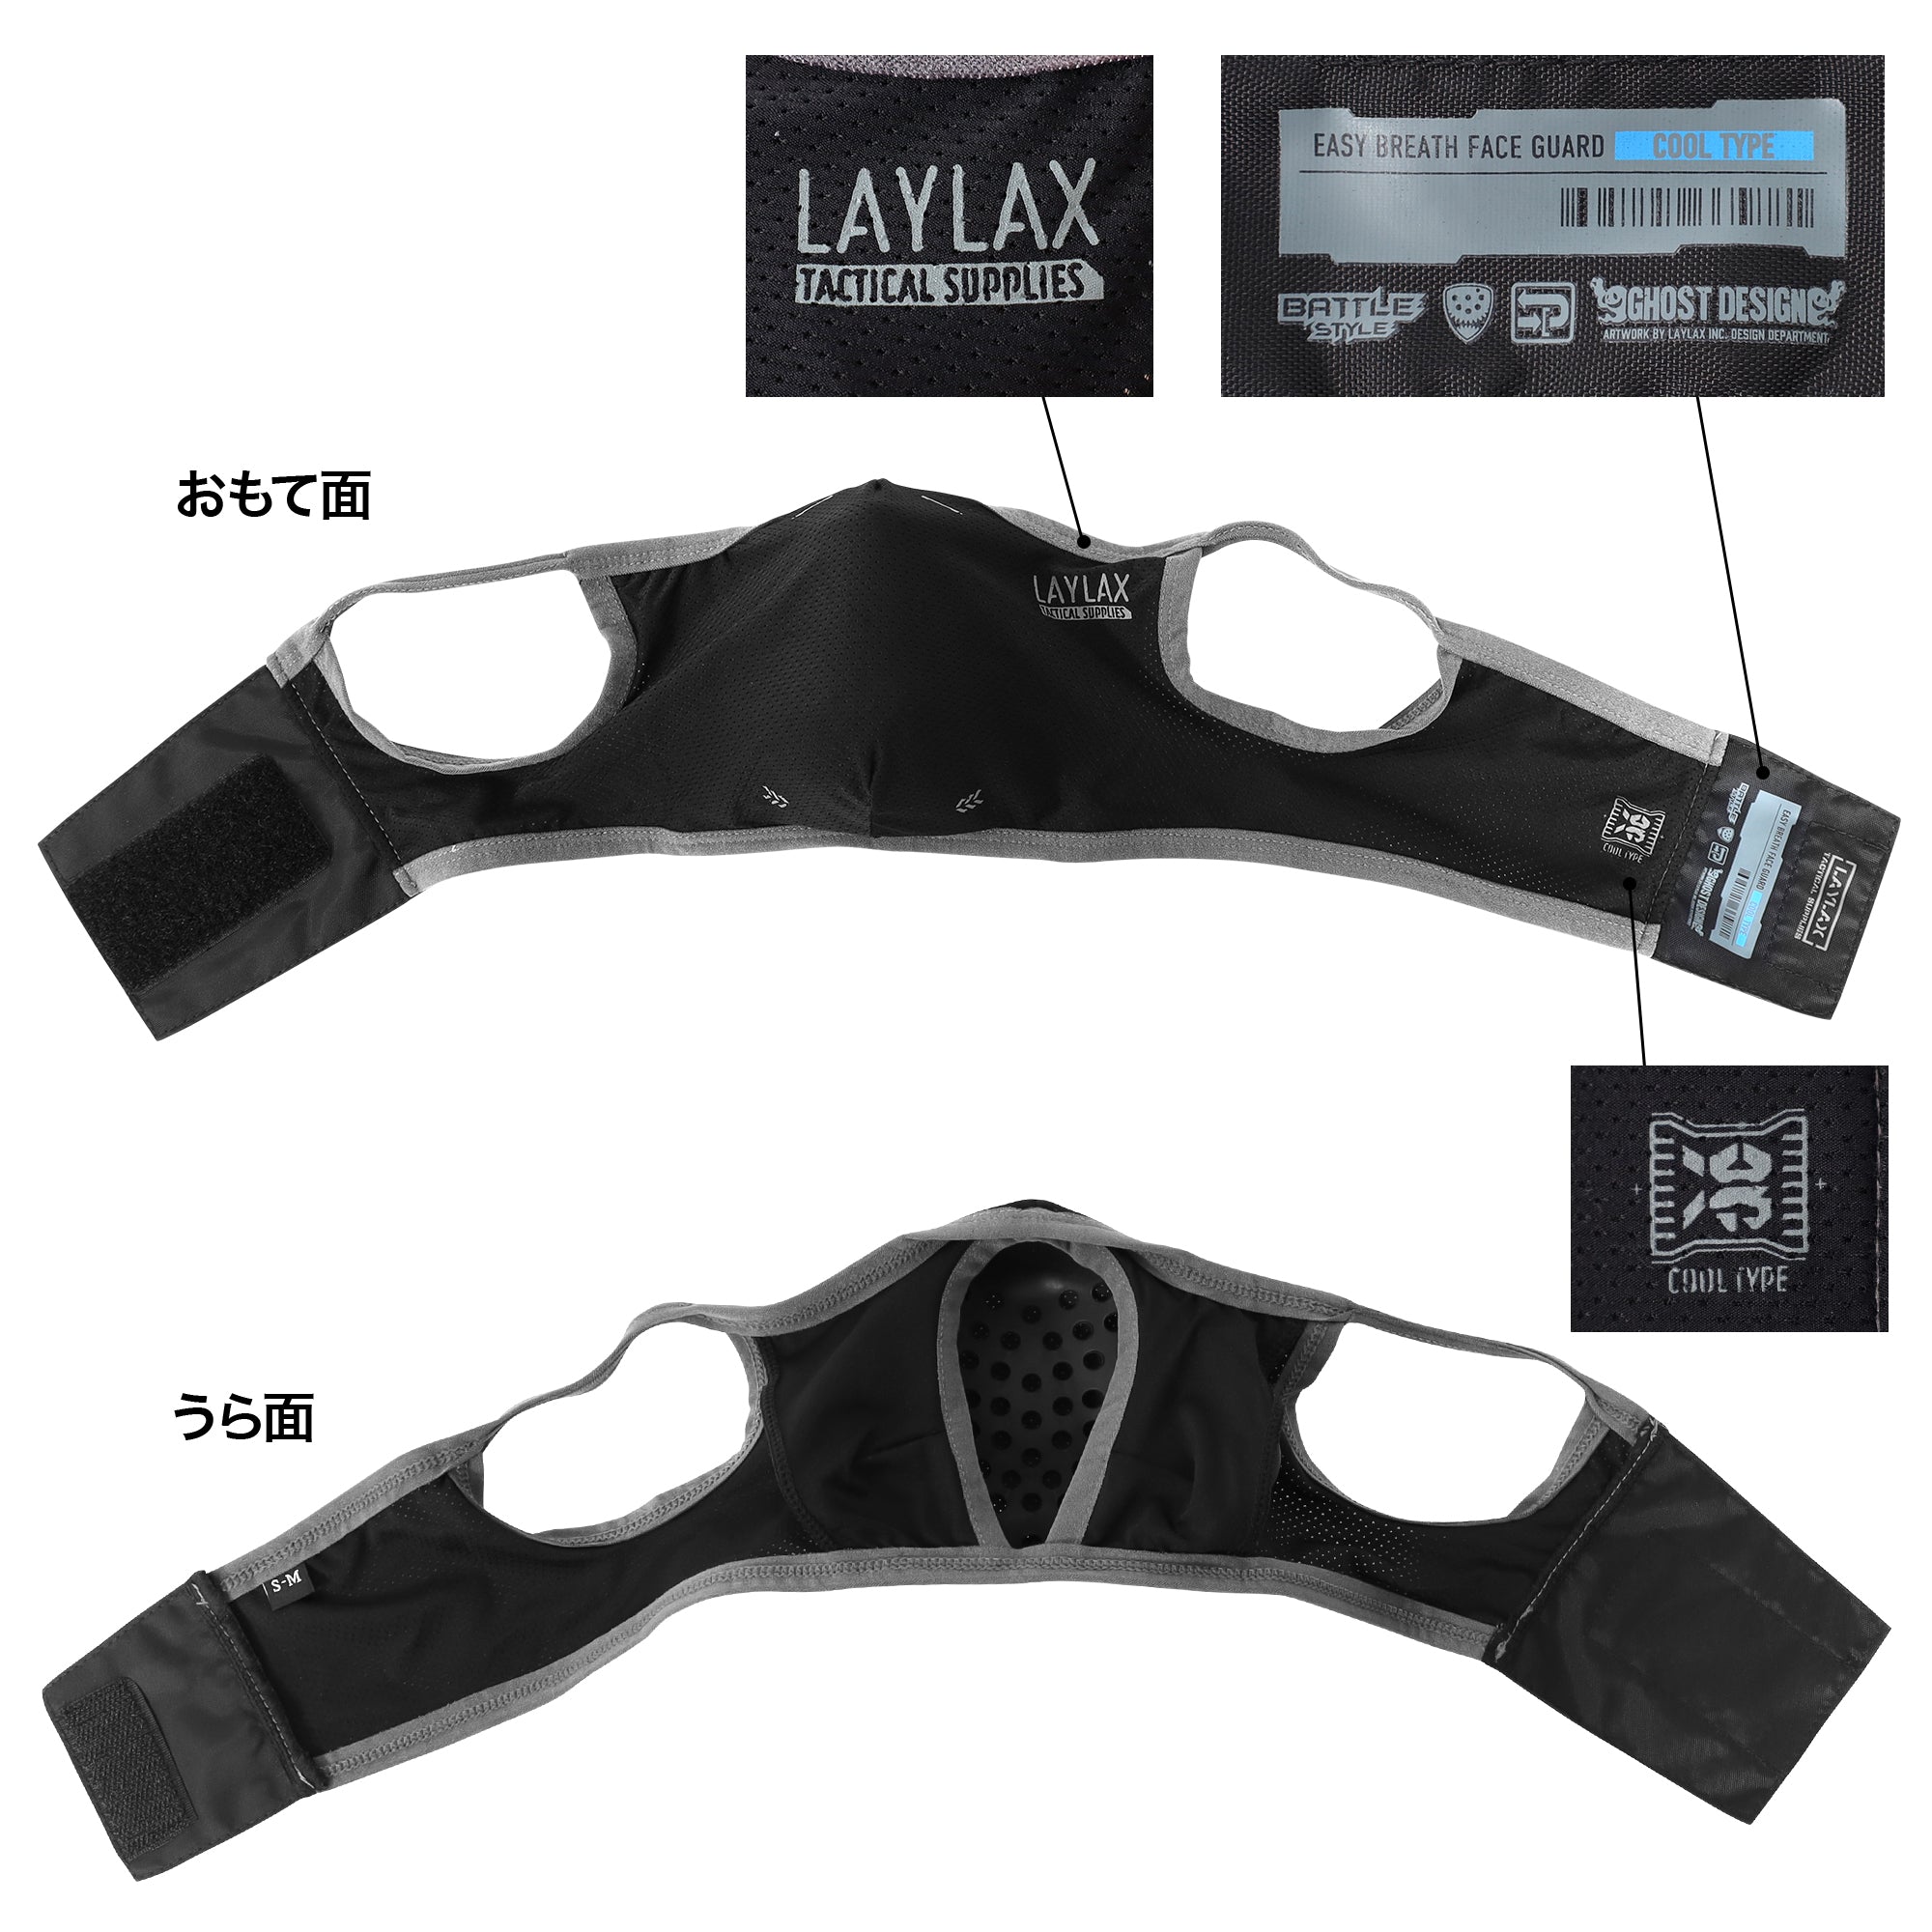 LayLax ハーフフェイスガード 冷感素材採用 シリコンインナーパット付き クールイージーブレス [ S/Mサイズ ]